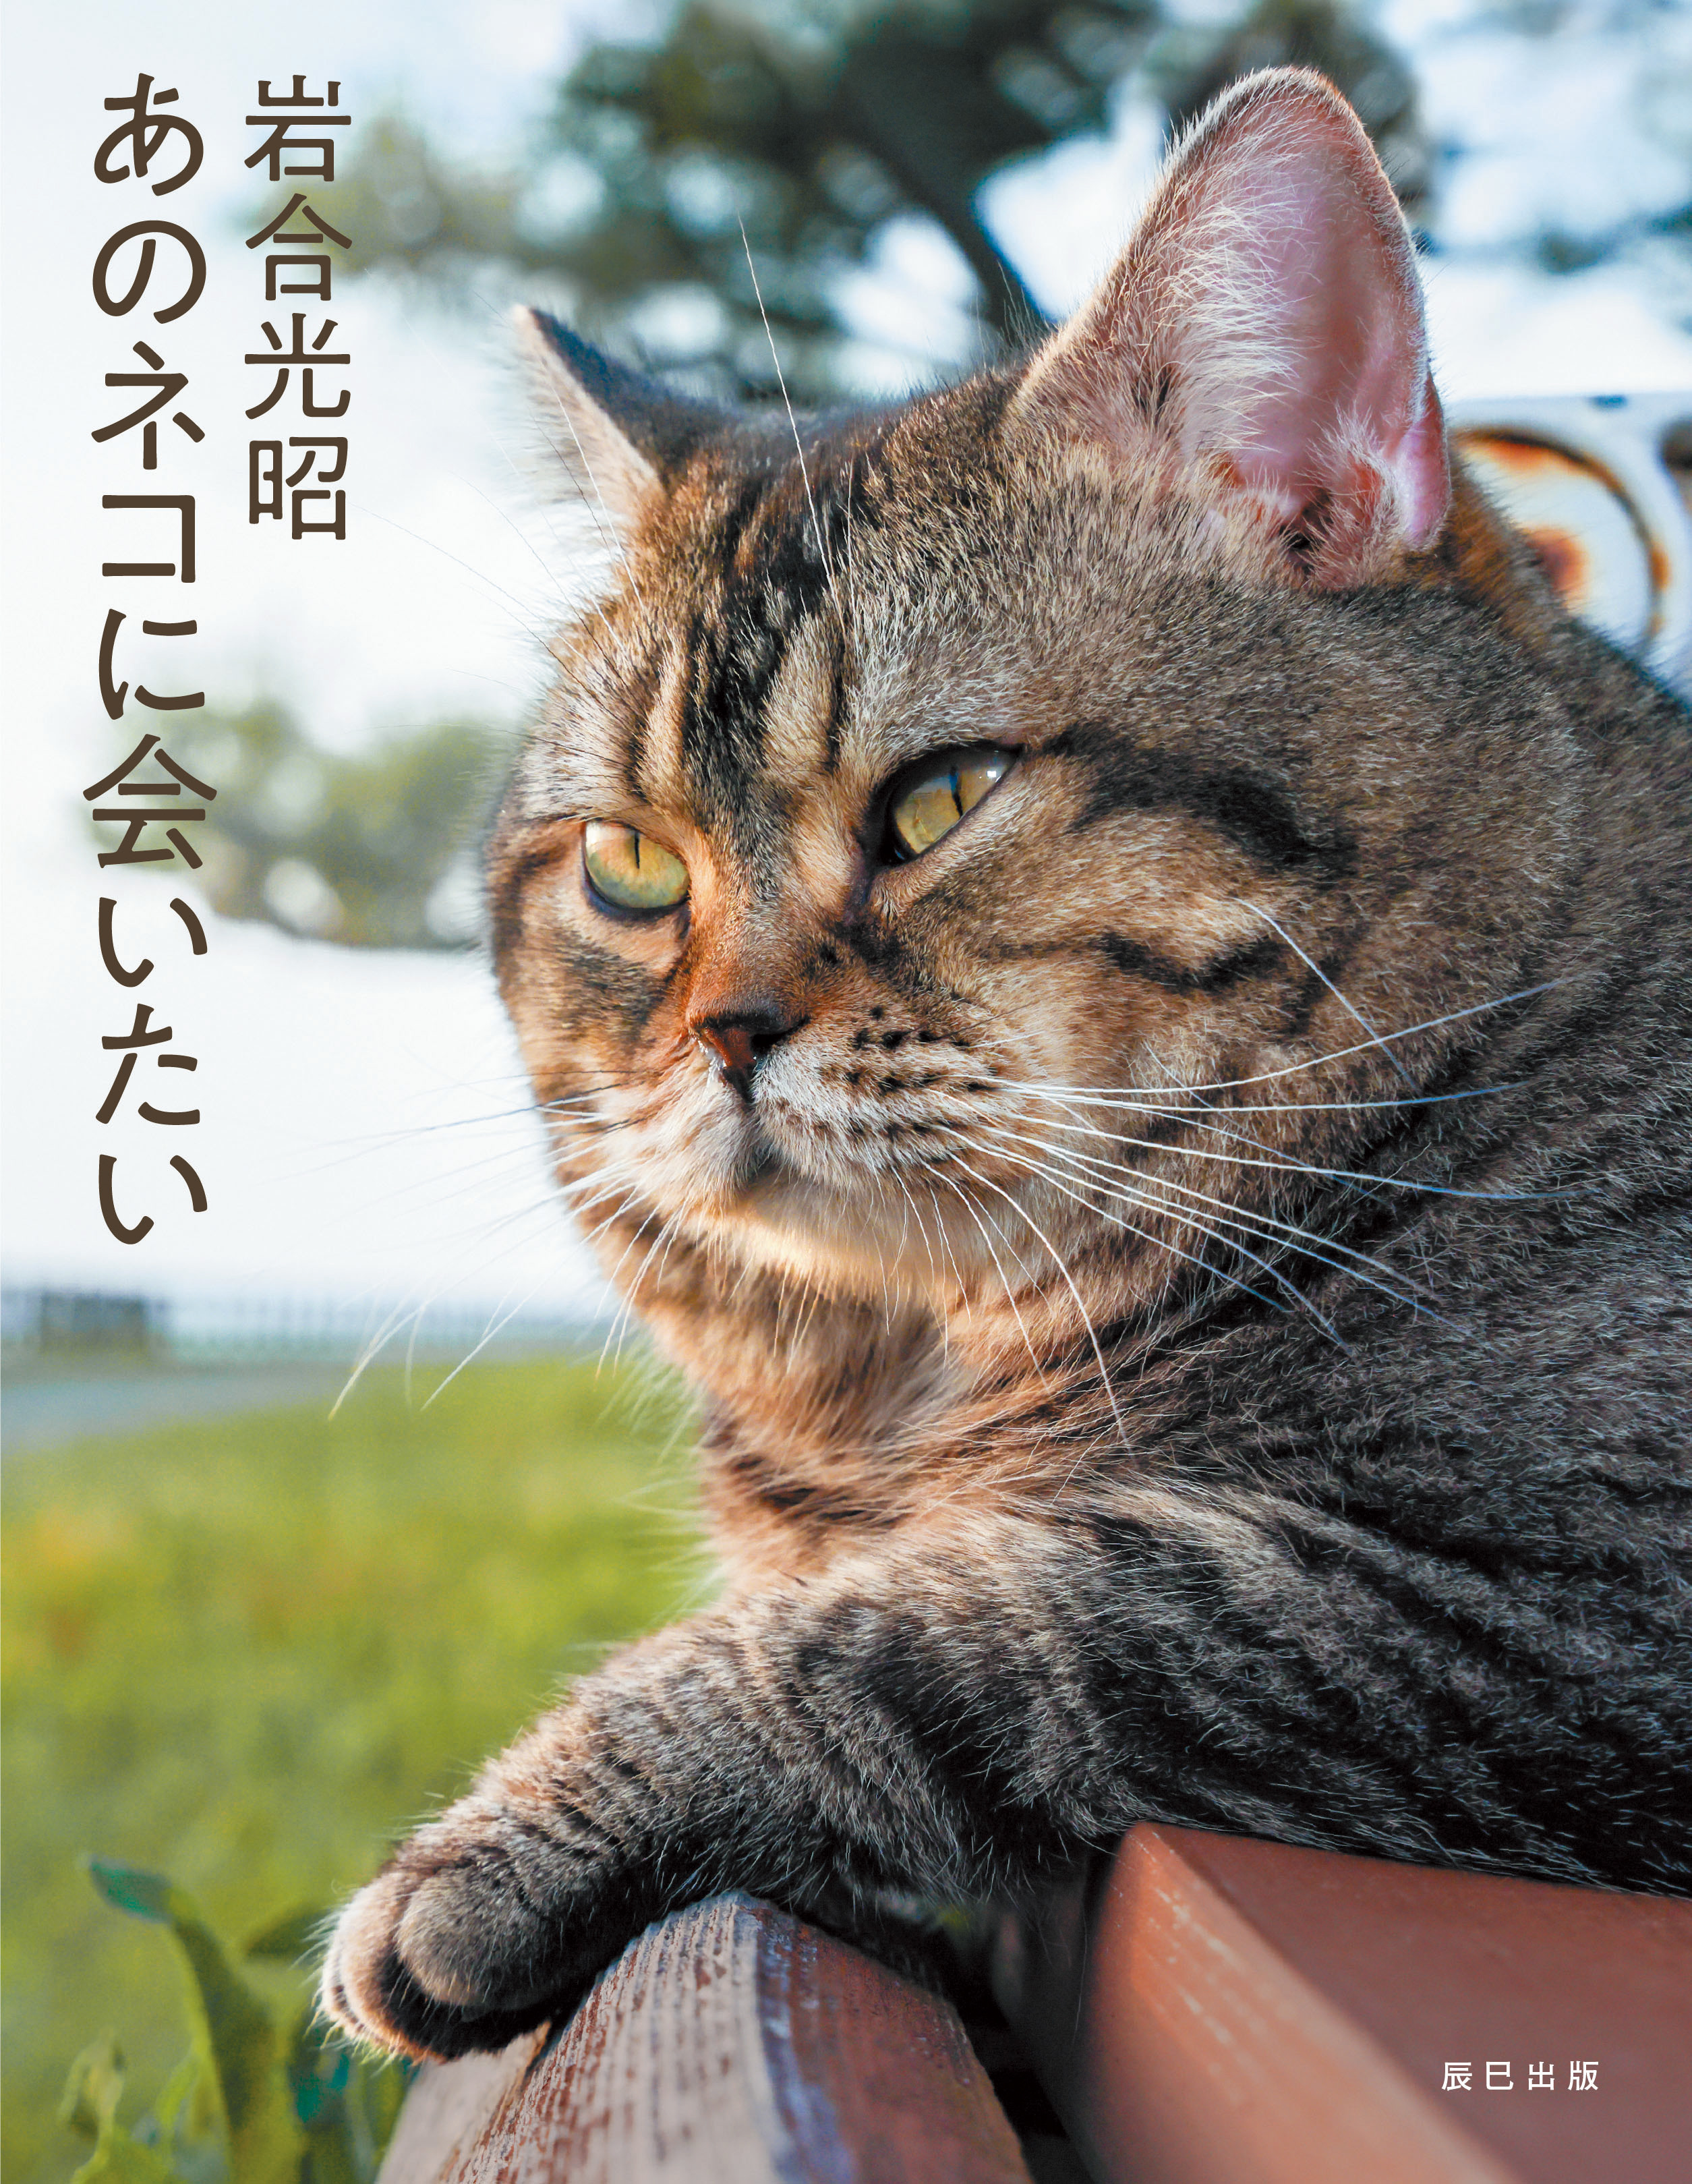 世界ネコ歩き でも知られる動物写真家 岩合光昭の最新作 あのネコに会いたい が話題 Real Sound リアルサウンド ブック